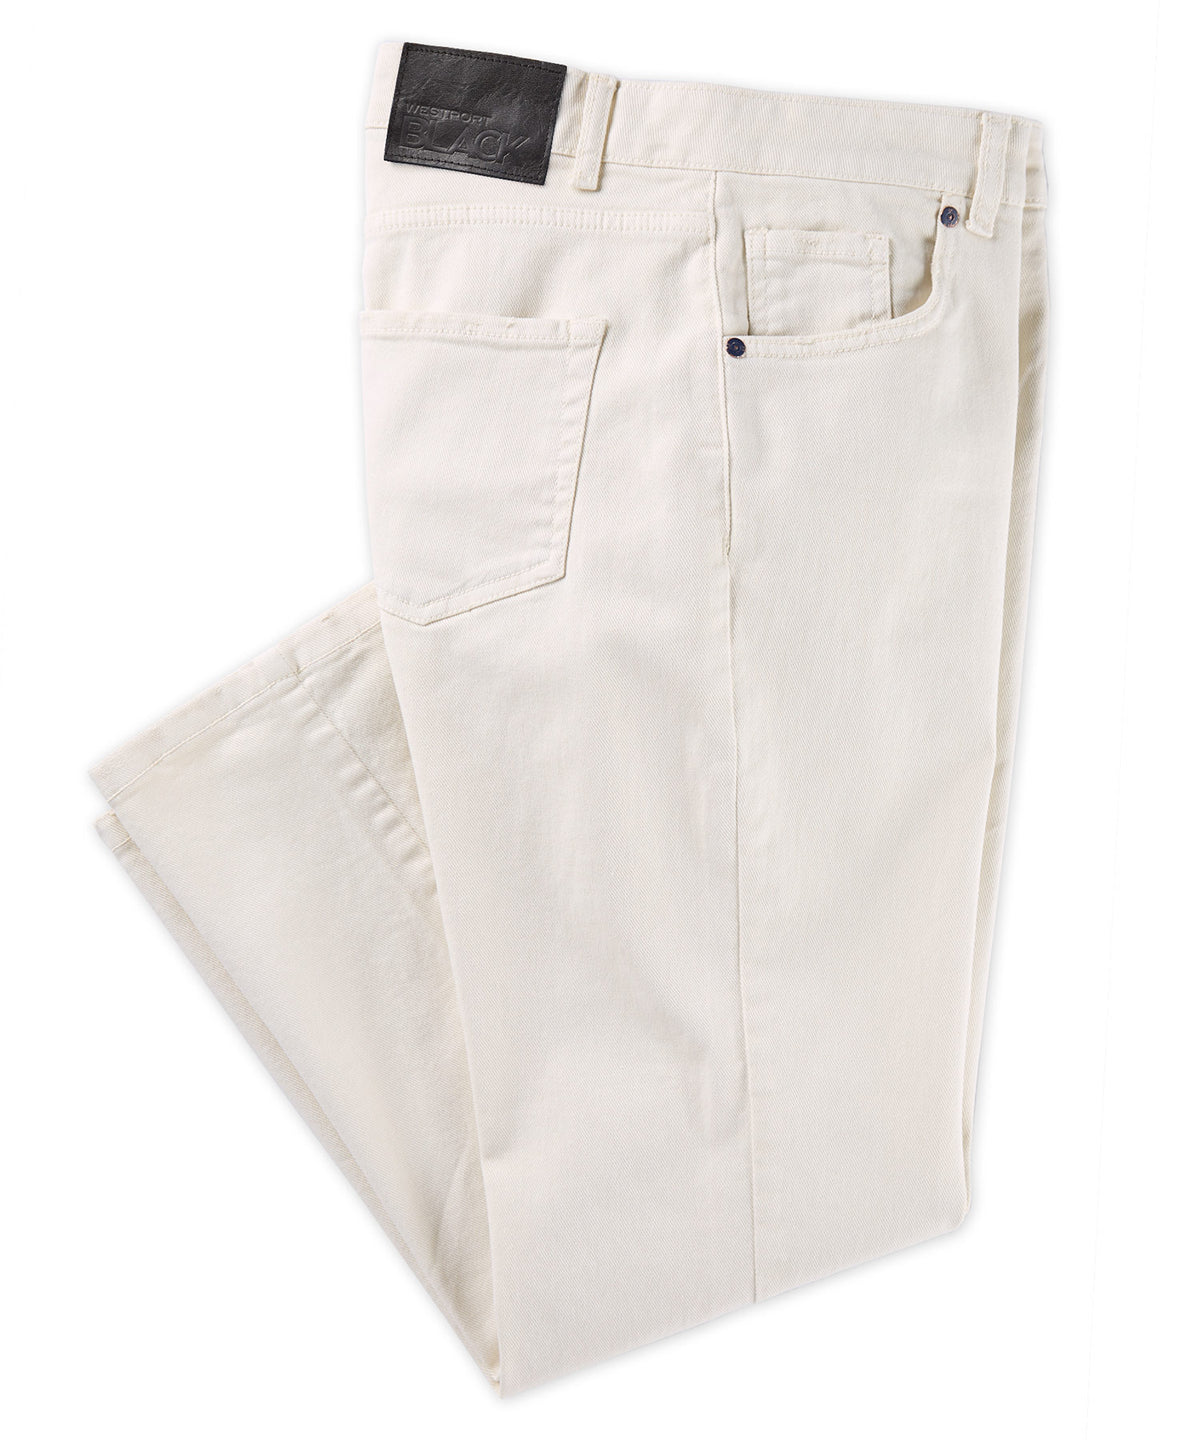 Westport Black Italian 5-Pocket Twill Jean, Big & Tall